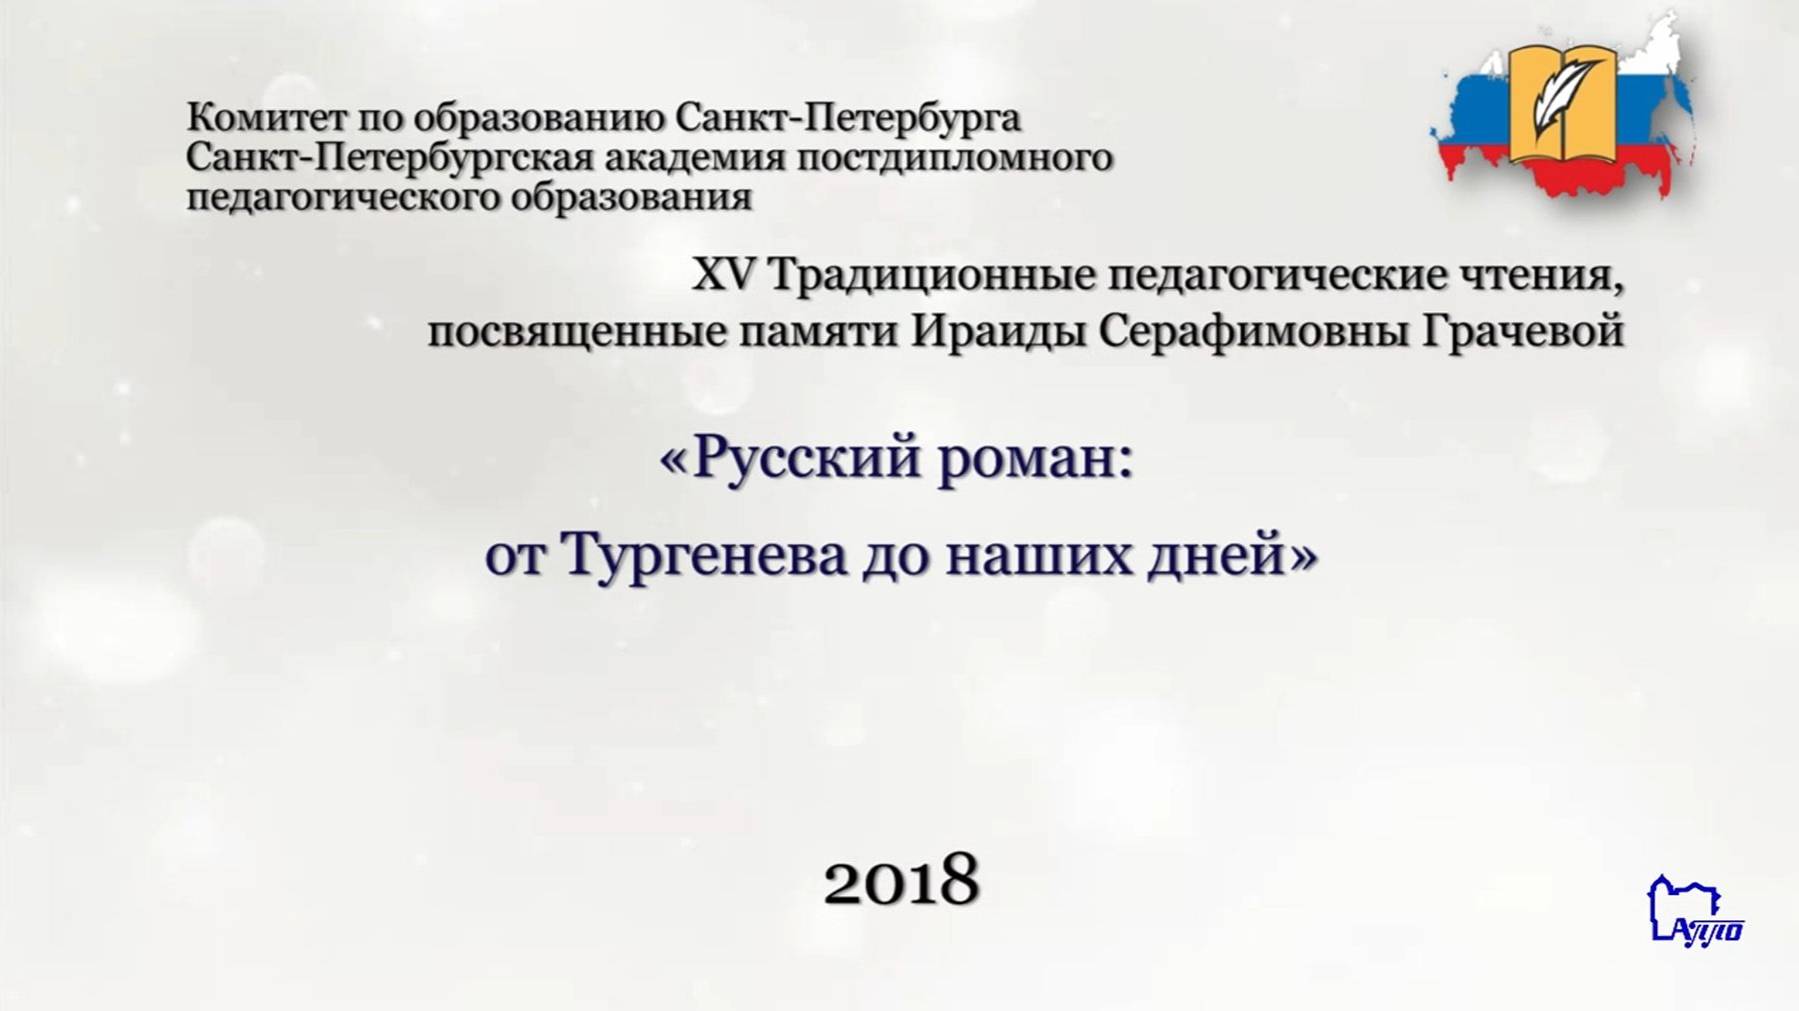 XV Традиционные педагогические  (Грачевские) чтения-2018.